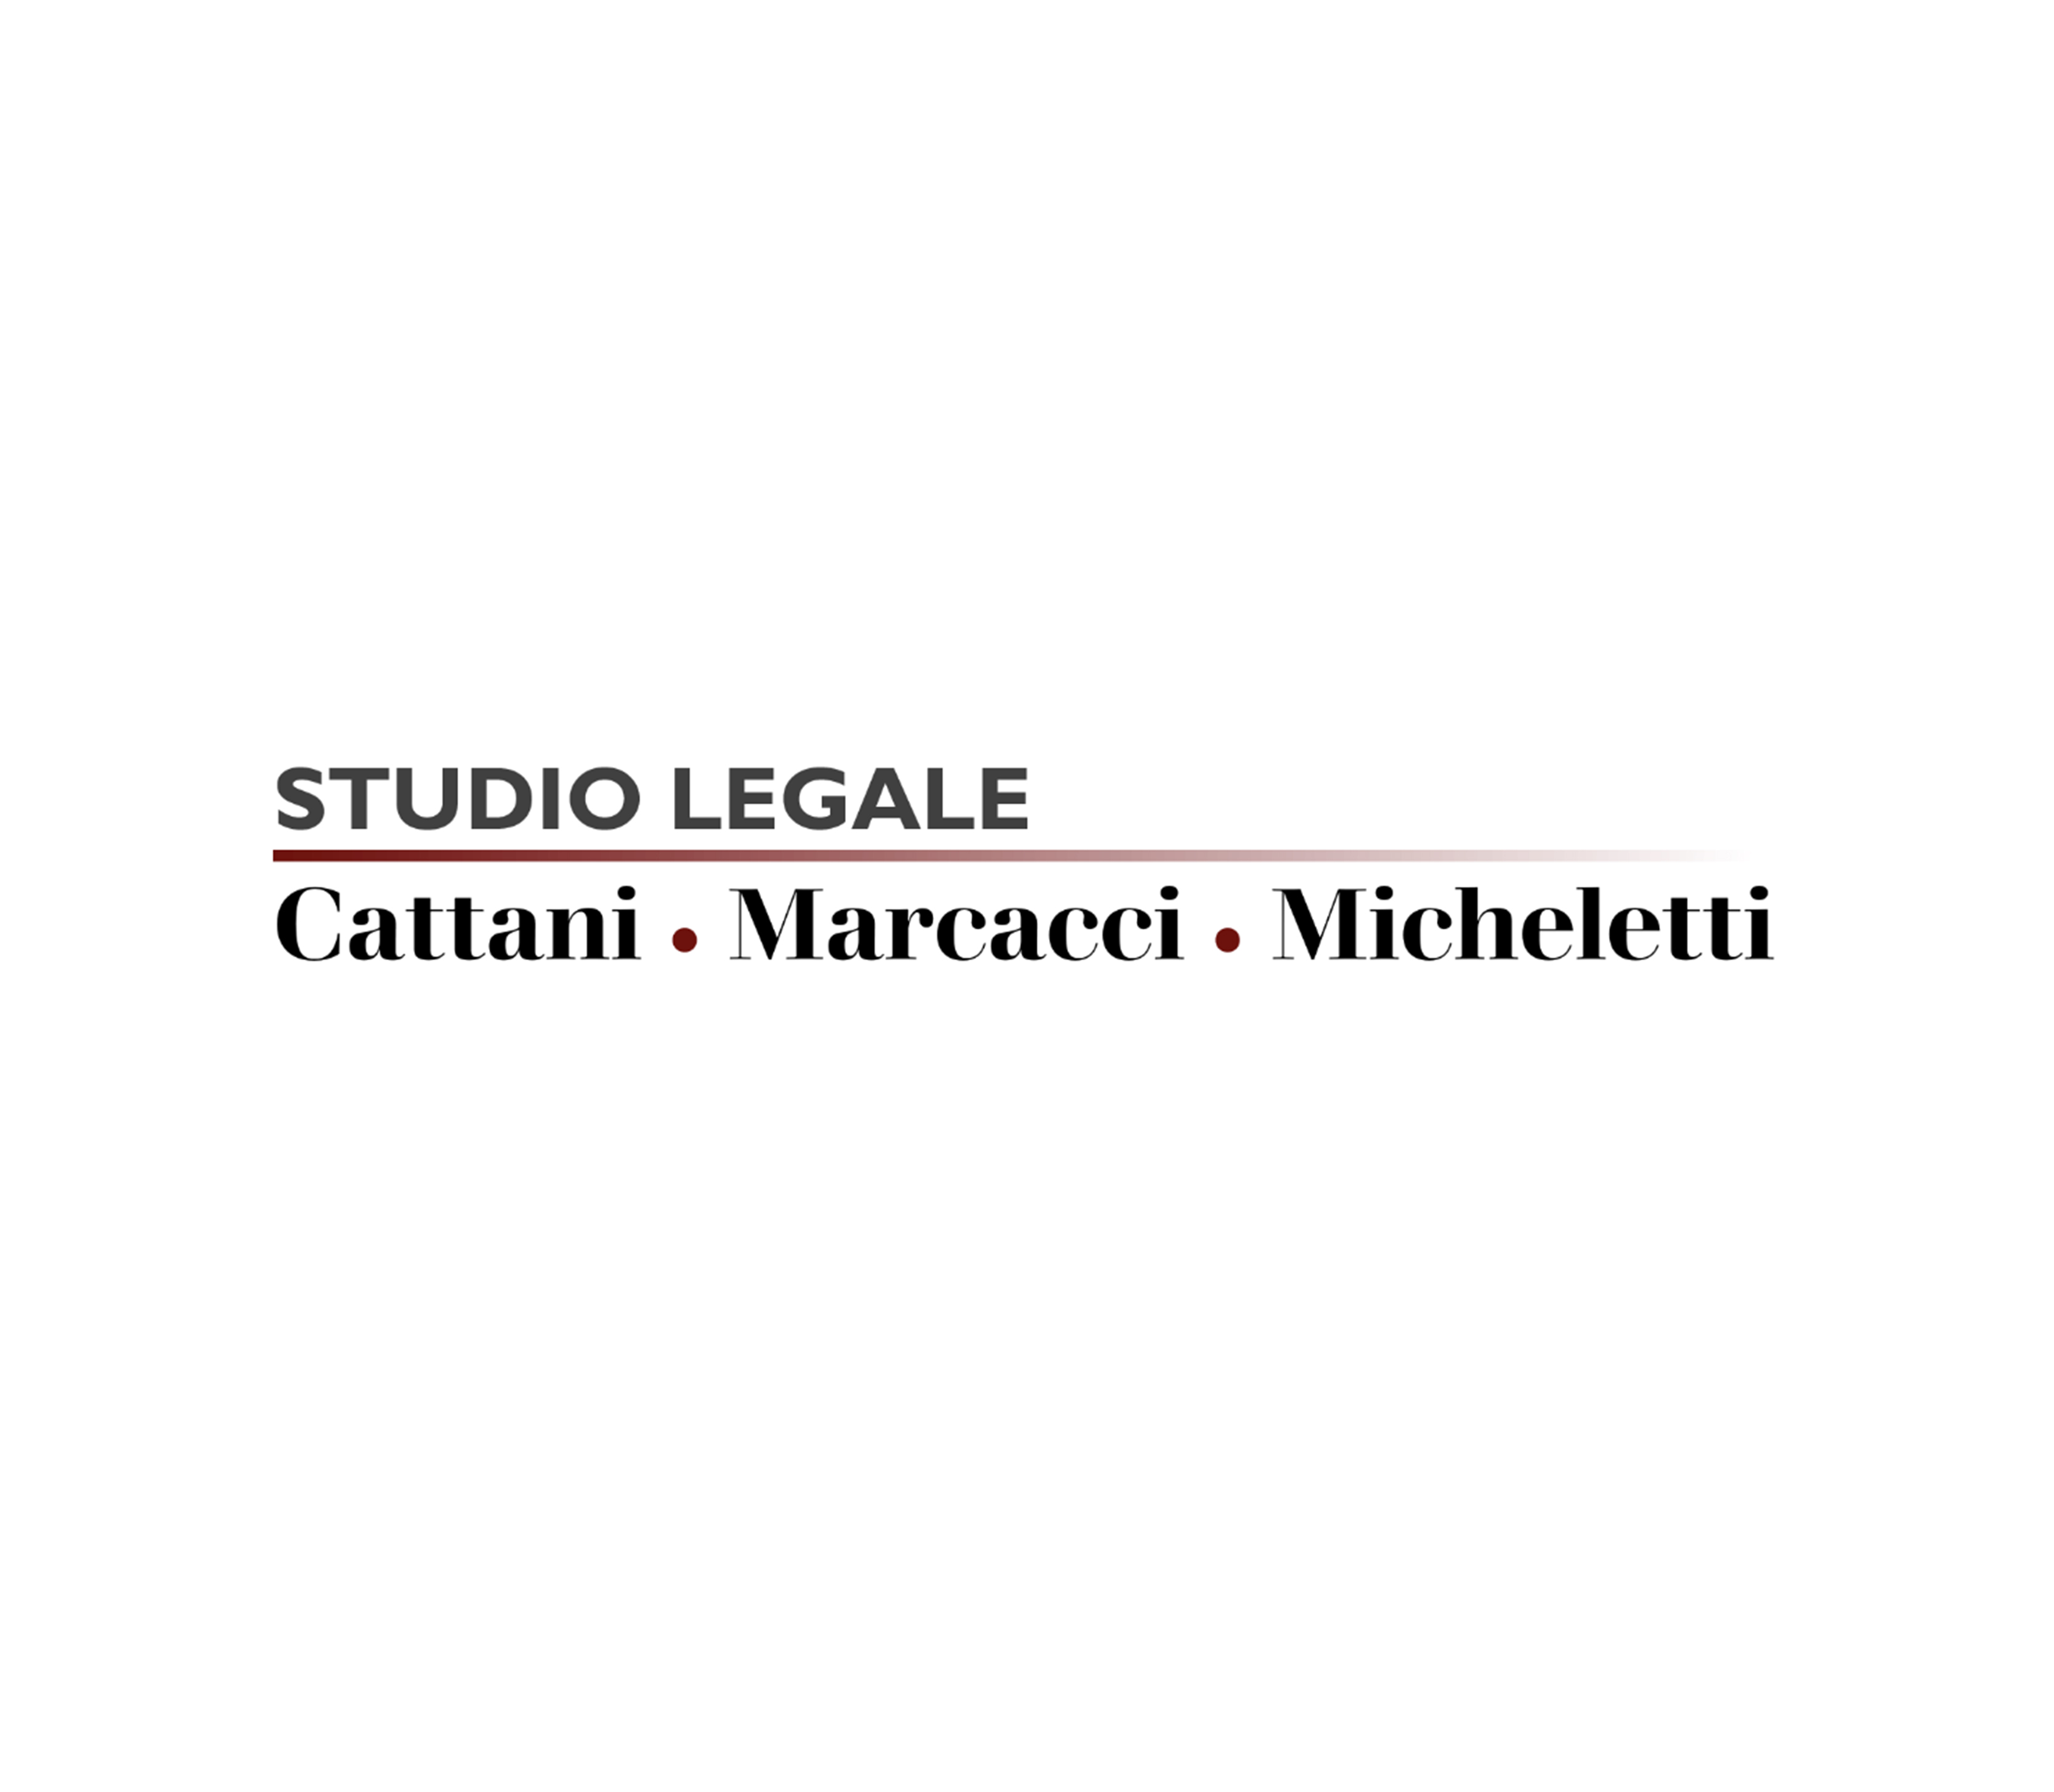 Cattani-Marcacci-Micheletti - Studio legale